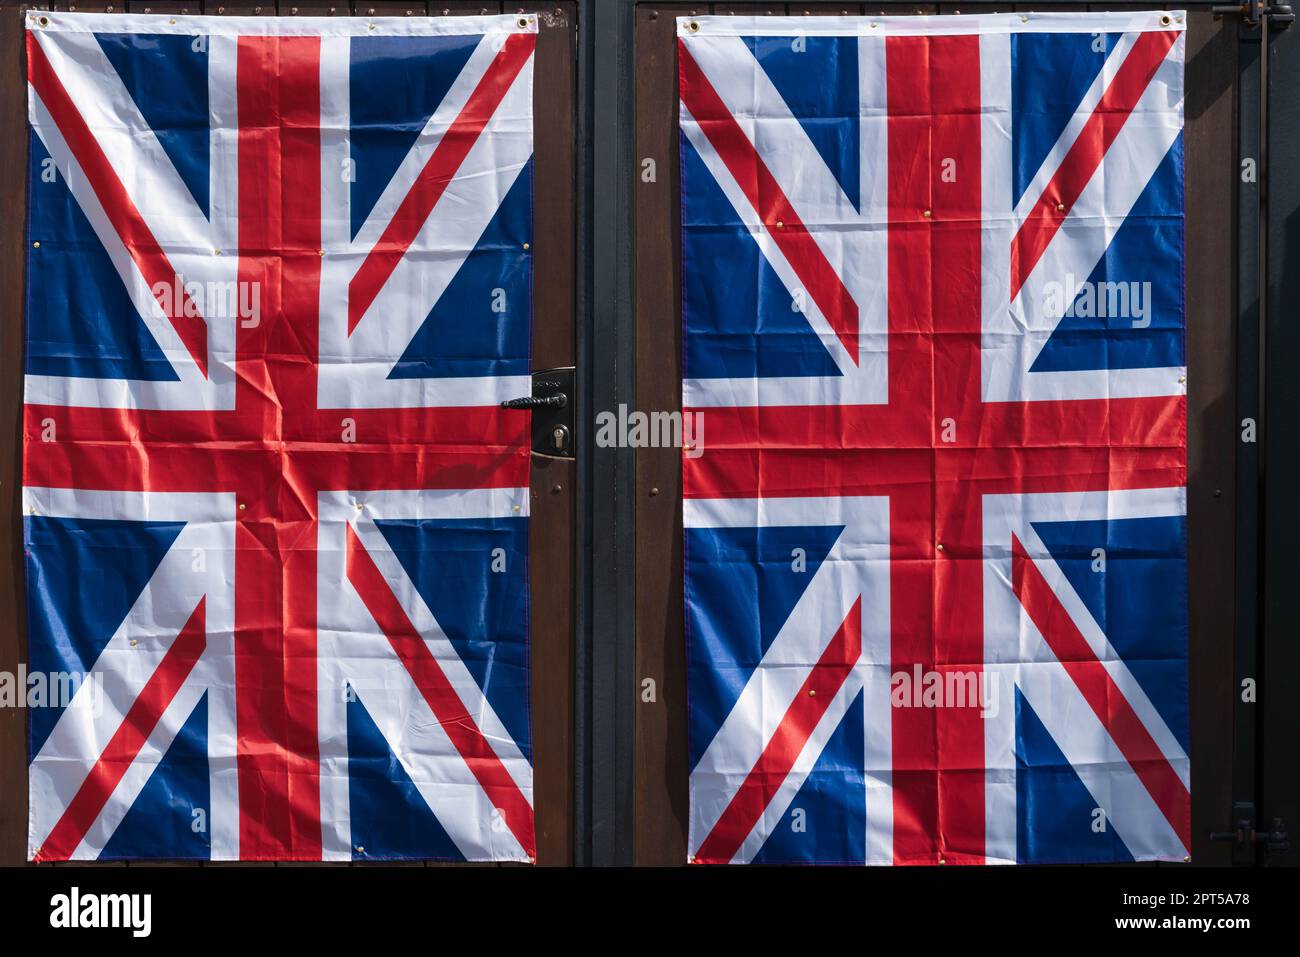 Royal Celebrations, double Union Jacks, flying the flag, Union Flag, flagpole, United Kingdom, flag, ensign, national flags, fly national flags, flag. Stock Photo